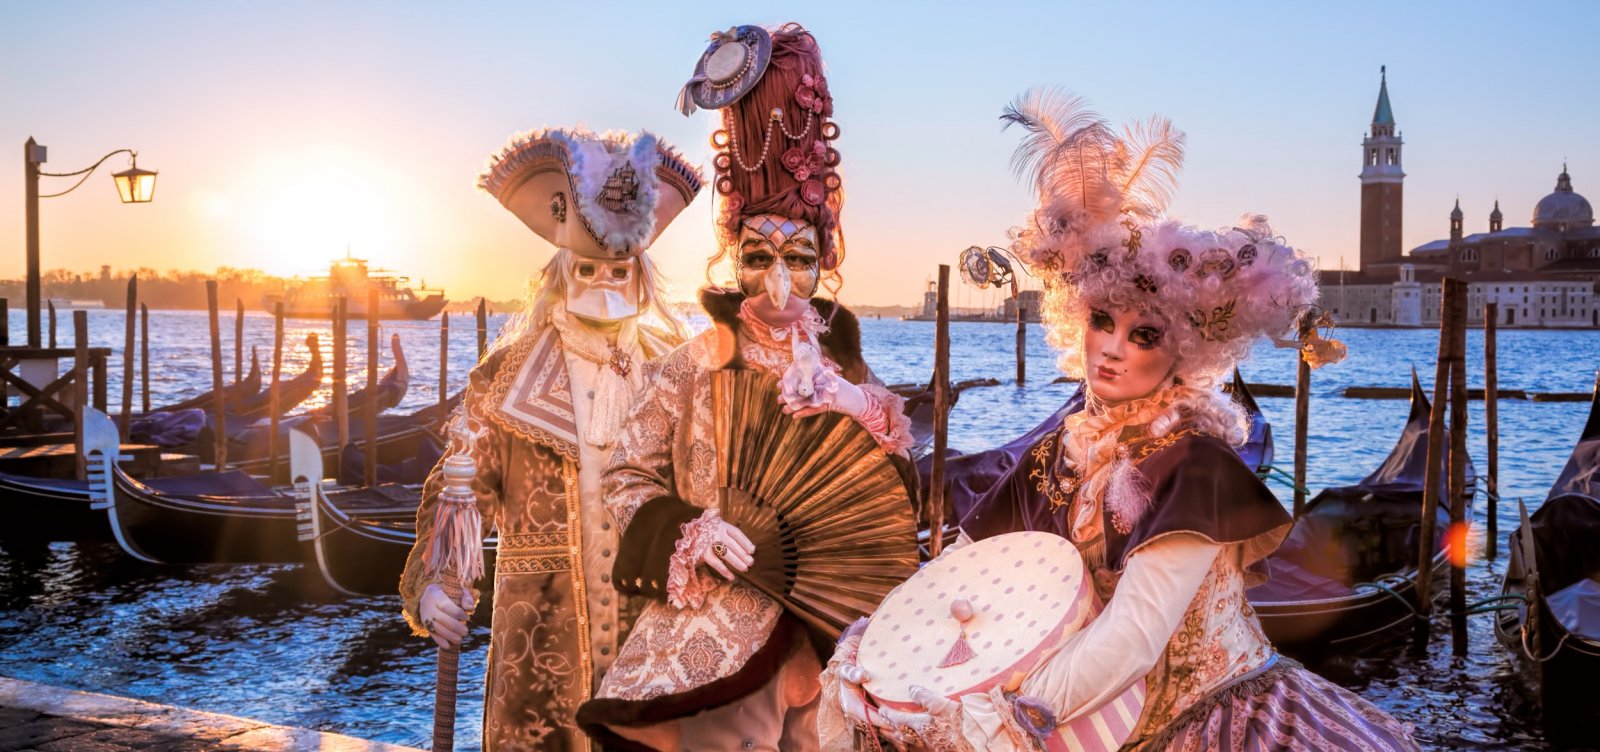 Carnaval de Veneza é retomado após dois anos sem festa